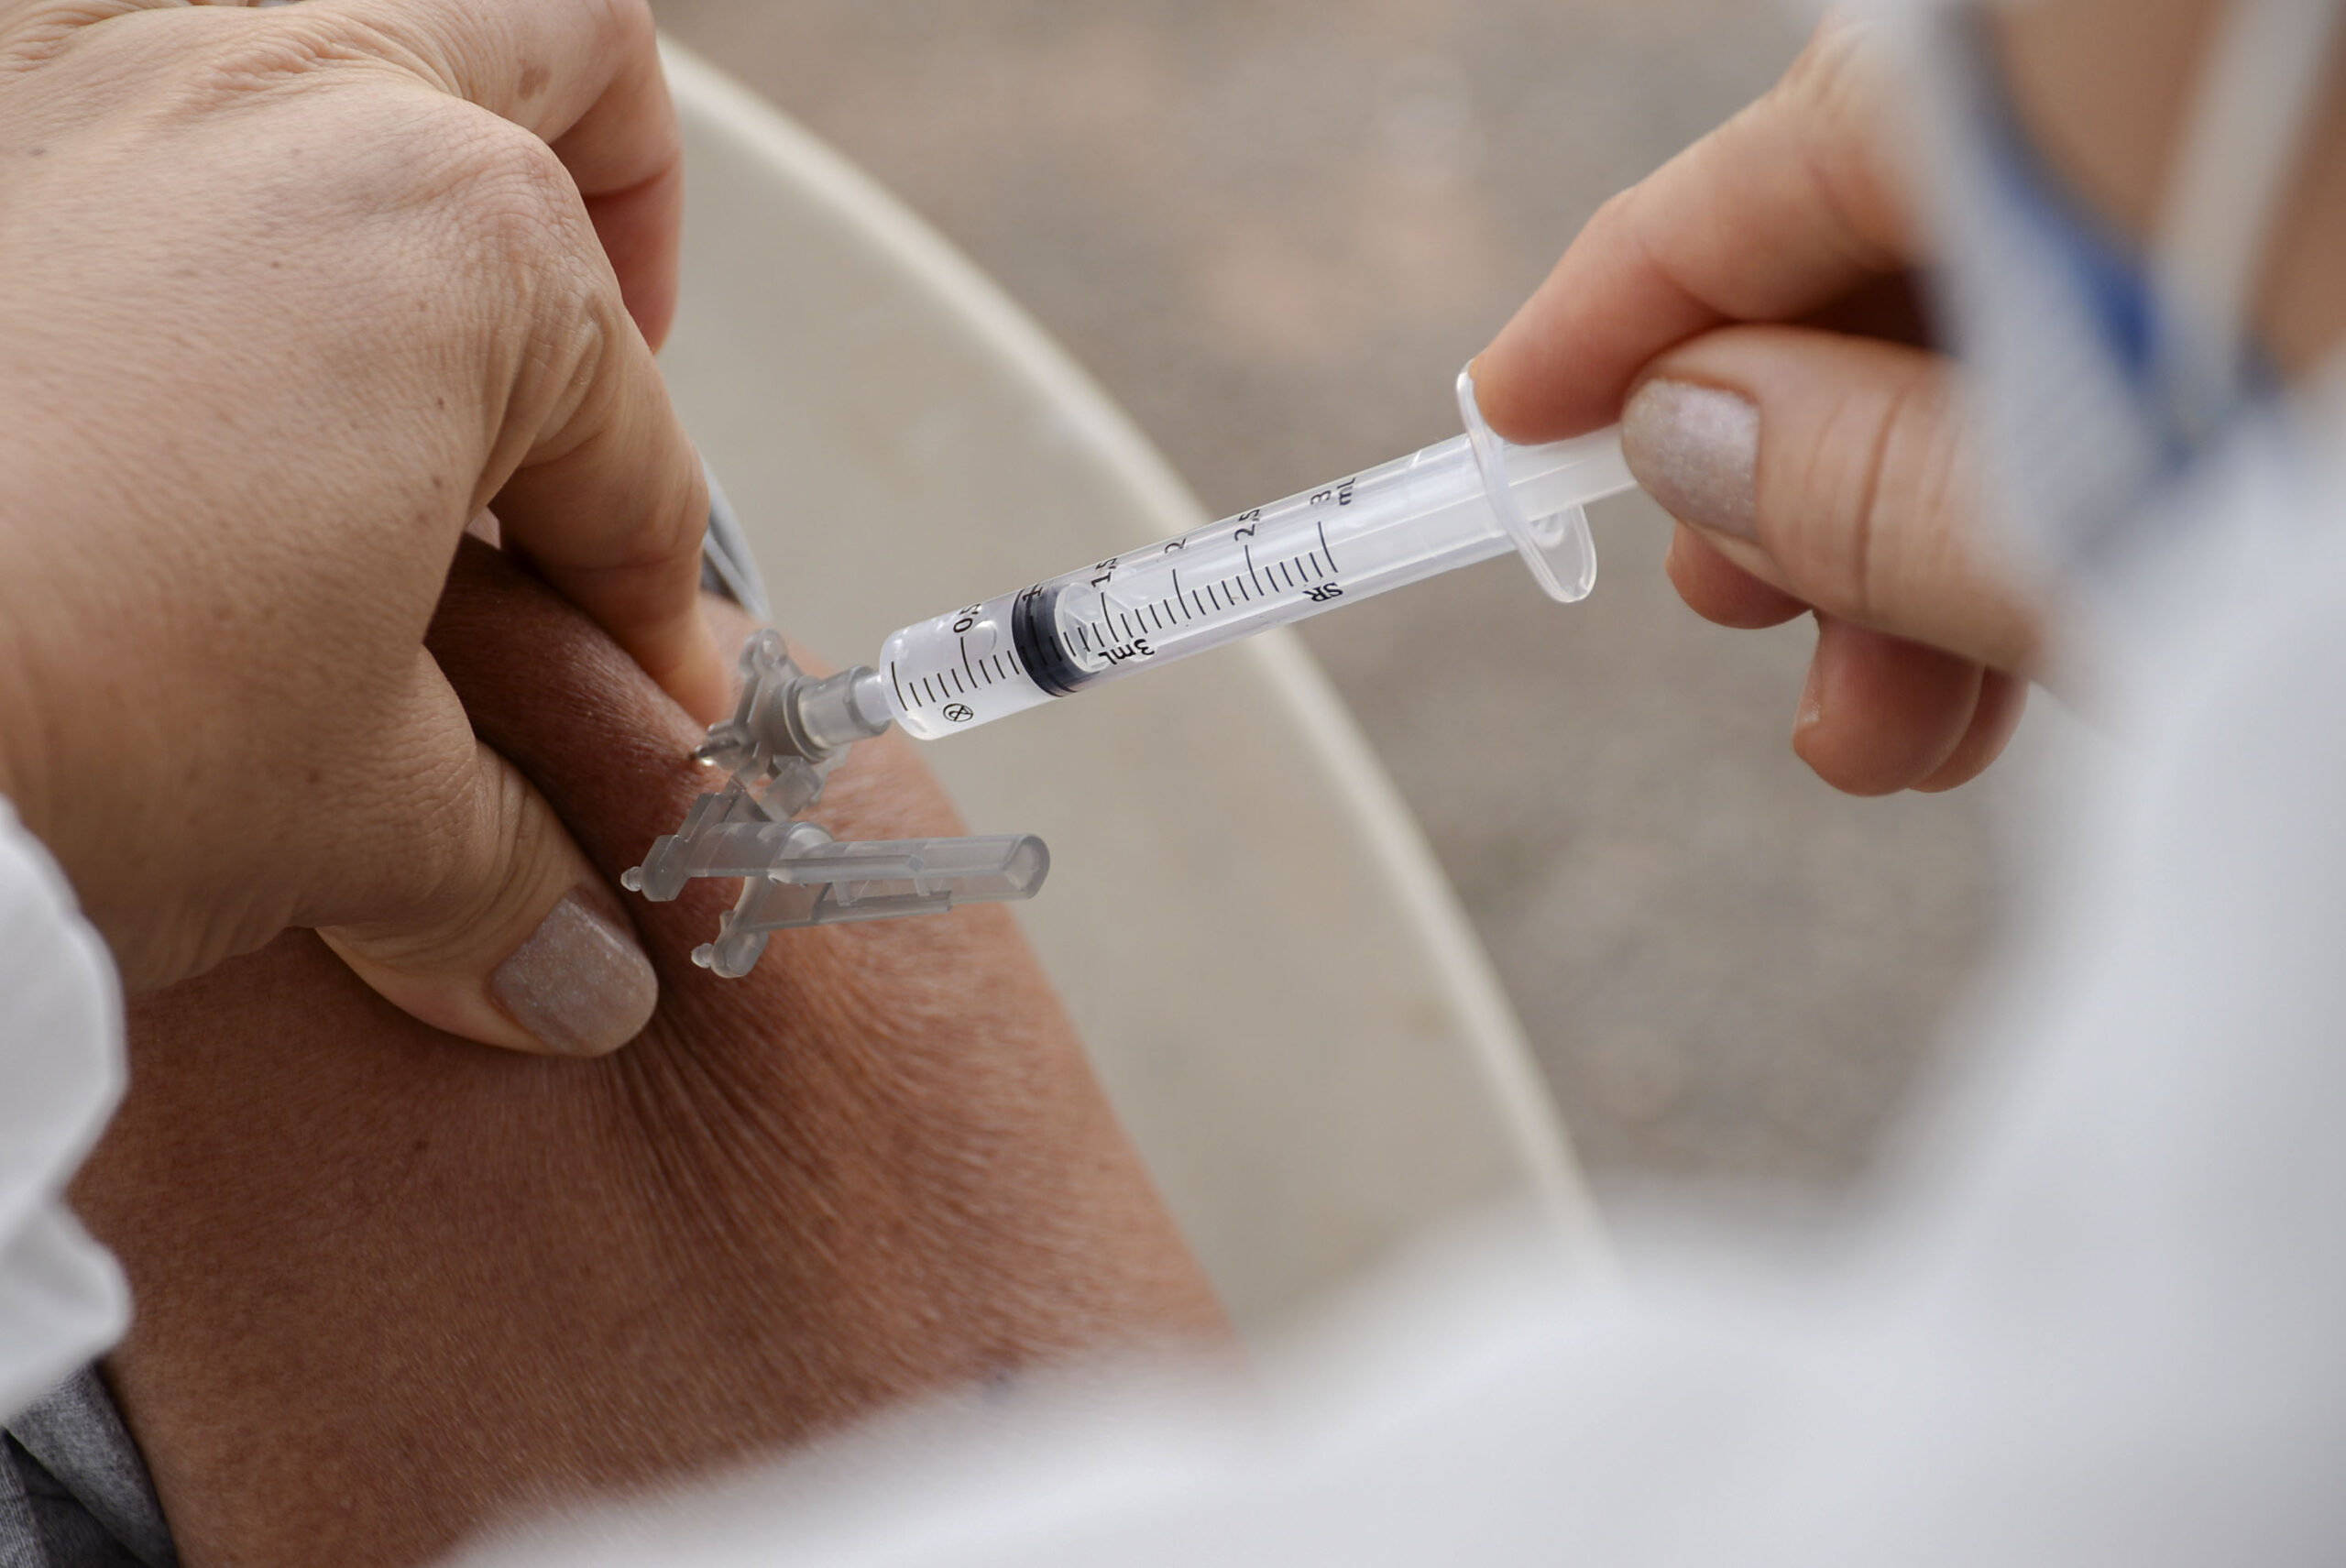 Em Araguaína, pessoas de 25 anos com comorbidades começam a ser vacinadas hoje, 31